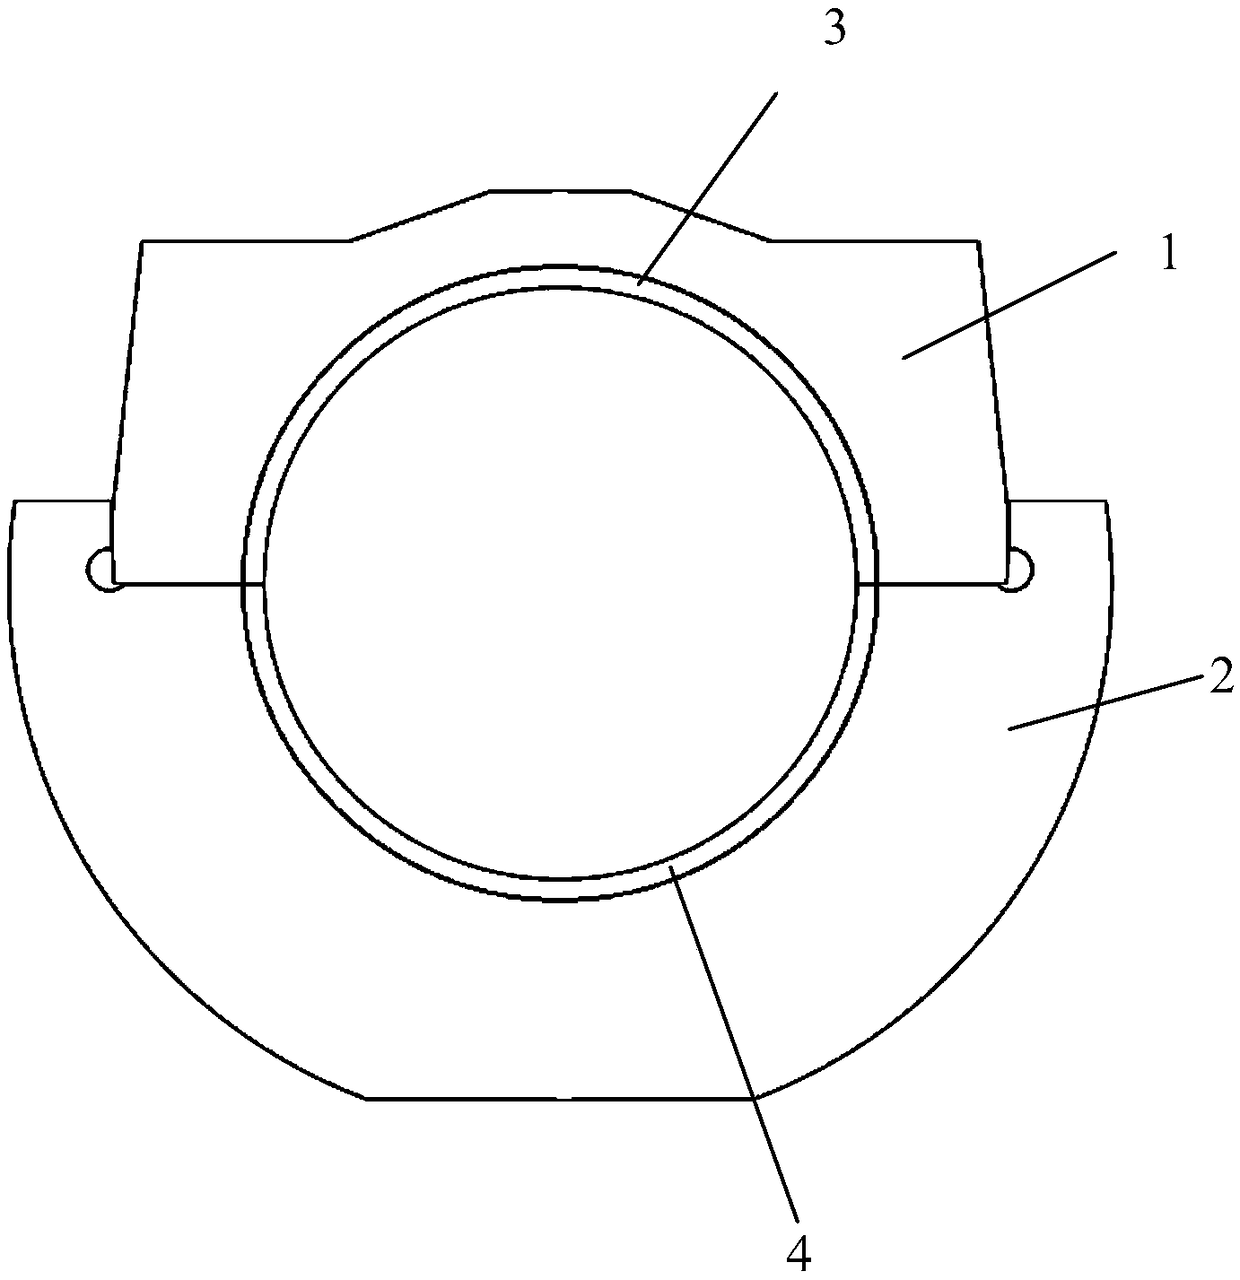 A design method of bolts for engine crankshaft bushings